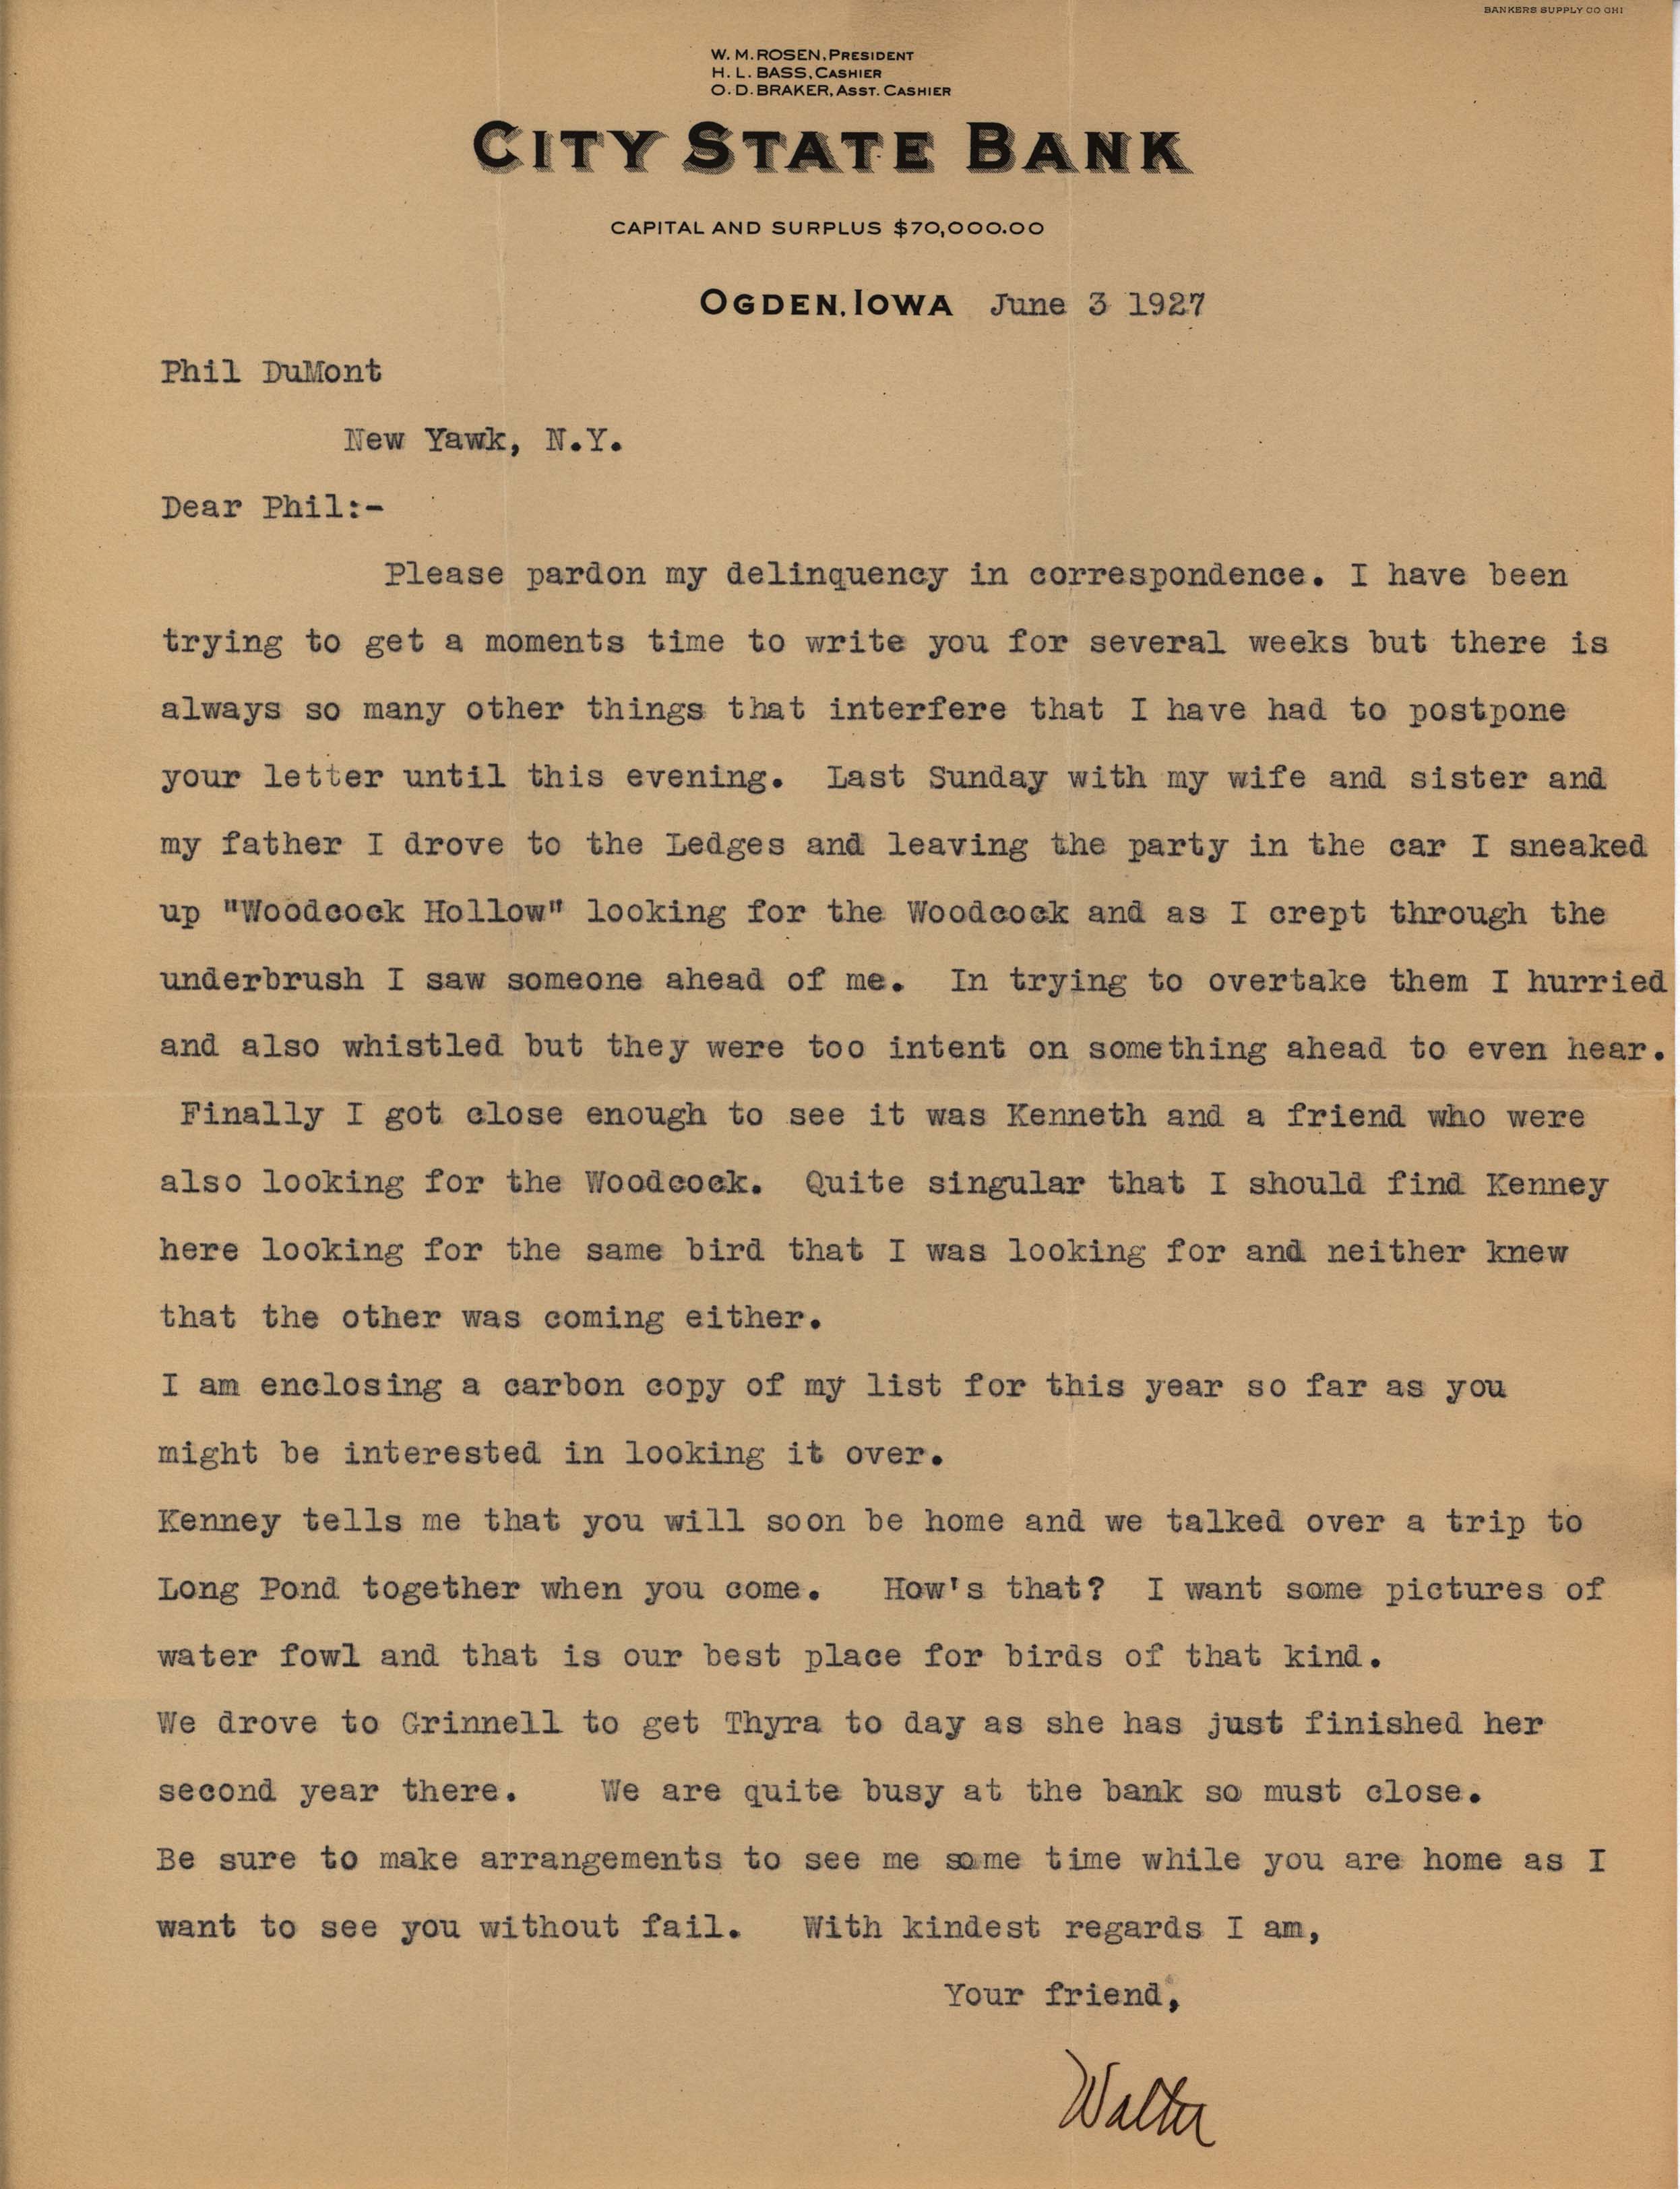 Walter Rosene letter to Philip DuMont regarding seeing Kenneth Nelson at the Ledges, June 3, 1927